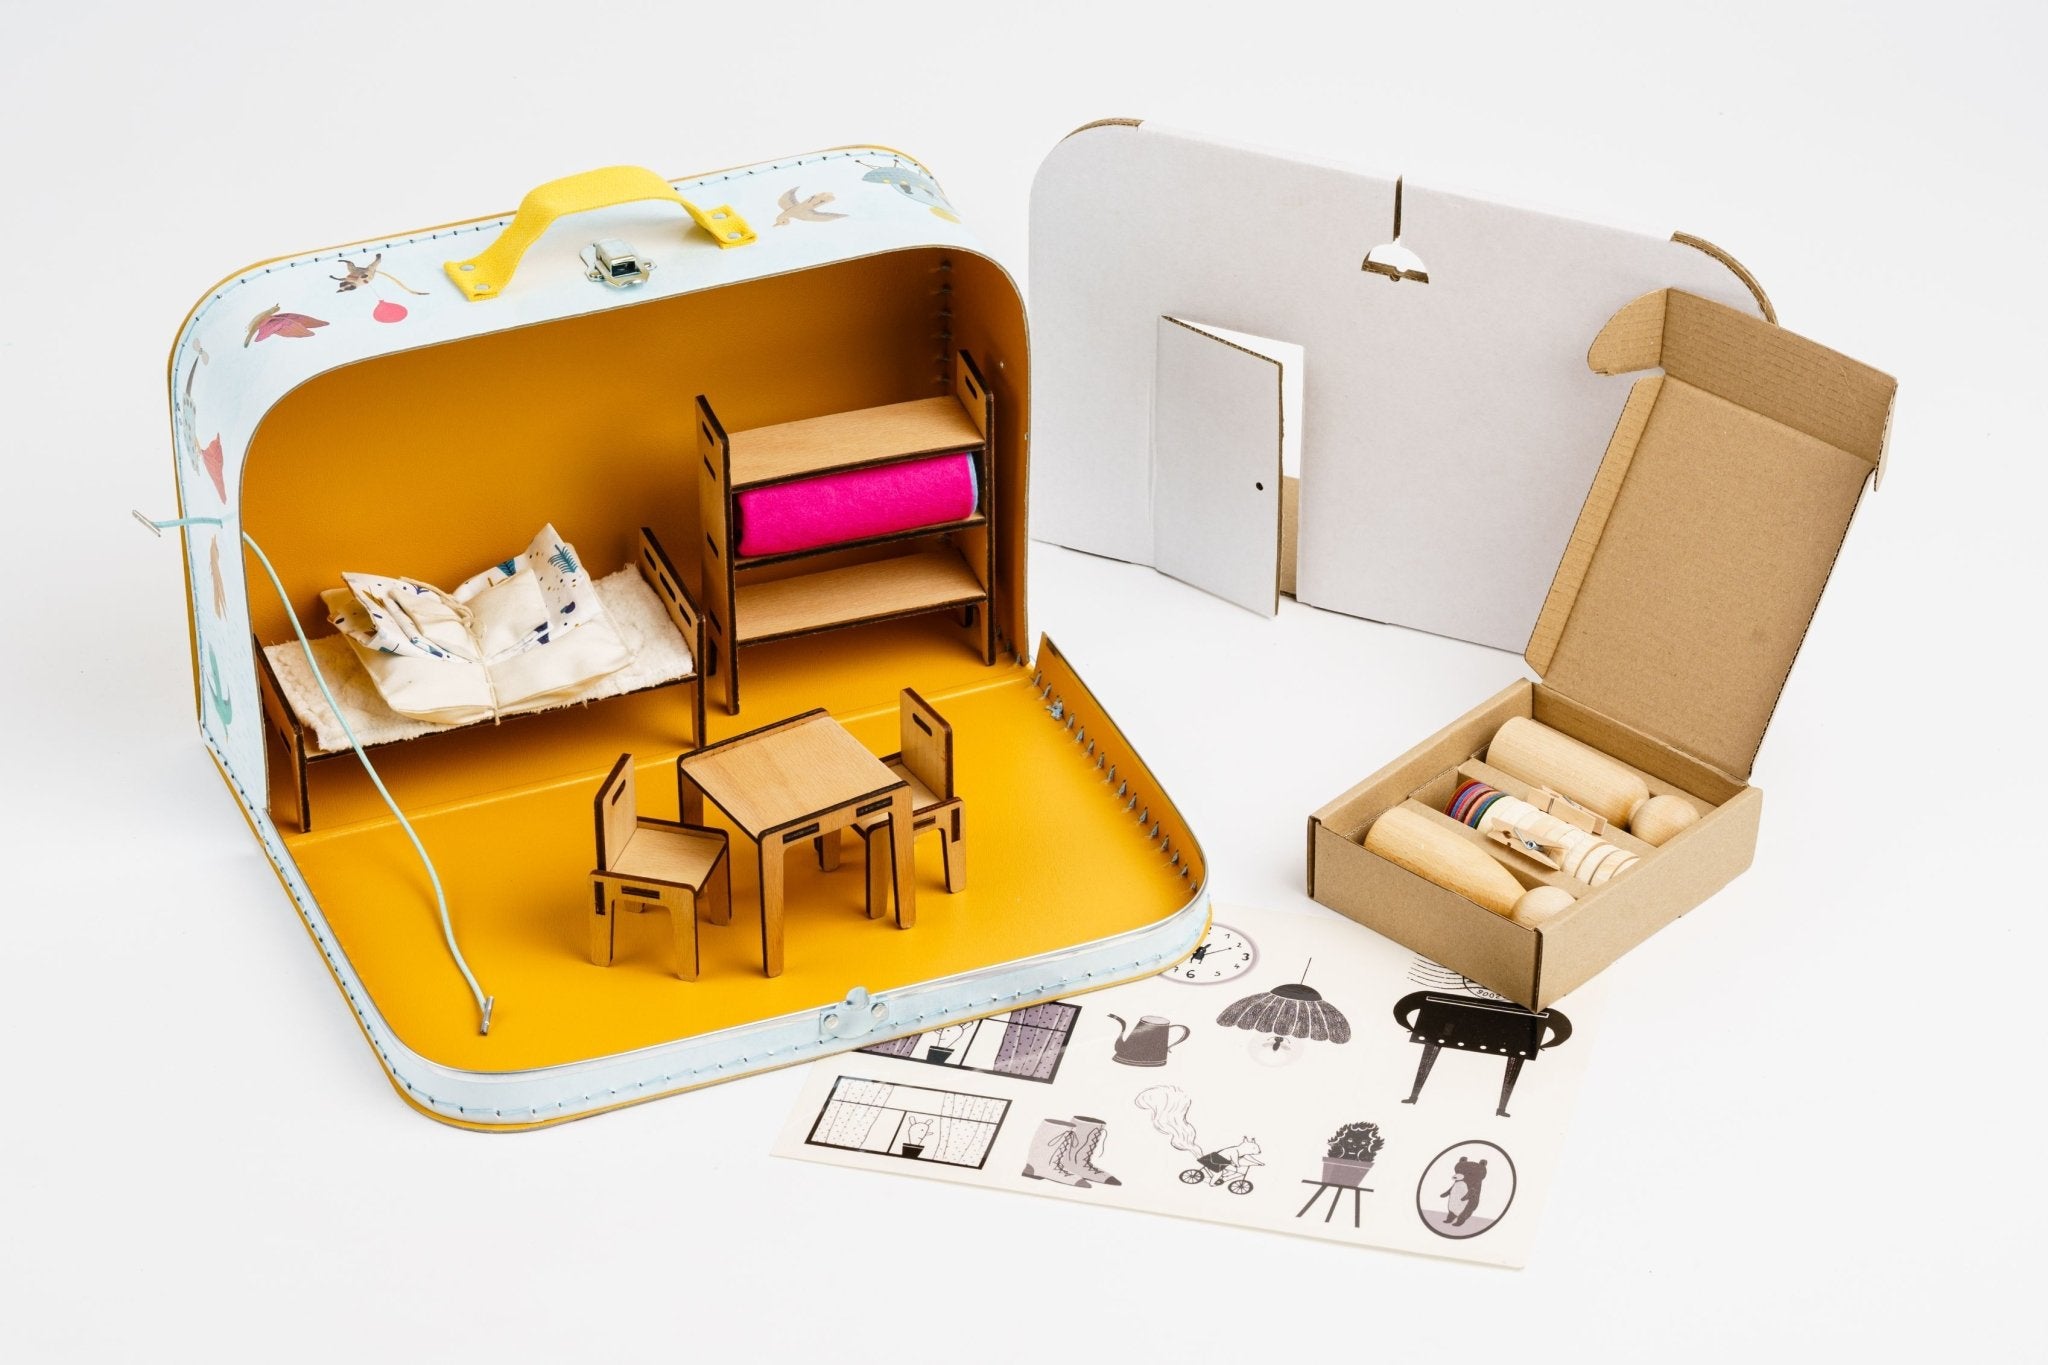 Kofferwelt 'Mein Haus' Puppenhaus - fabelhaftly.de